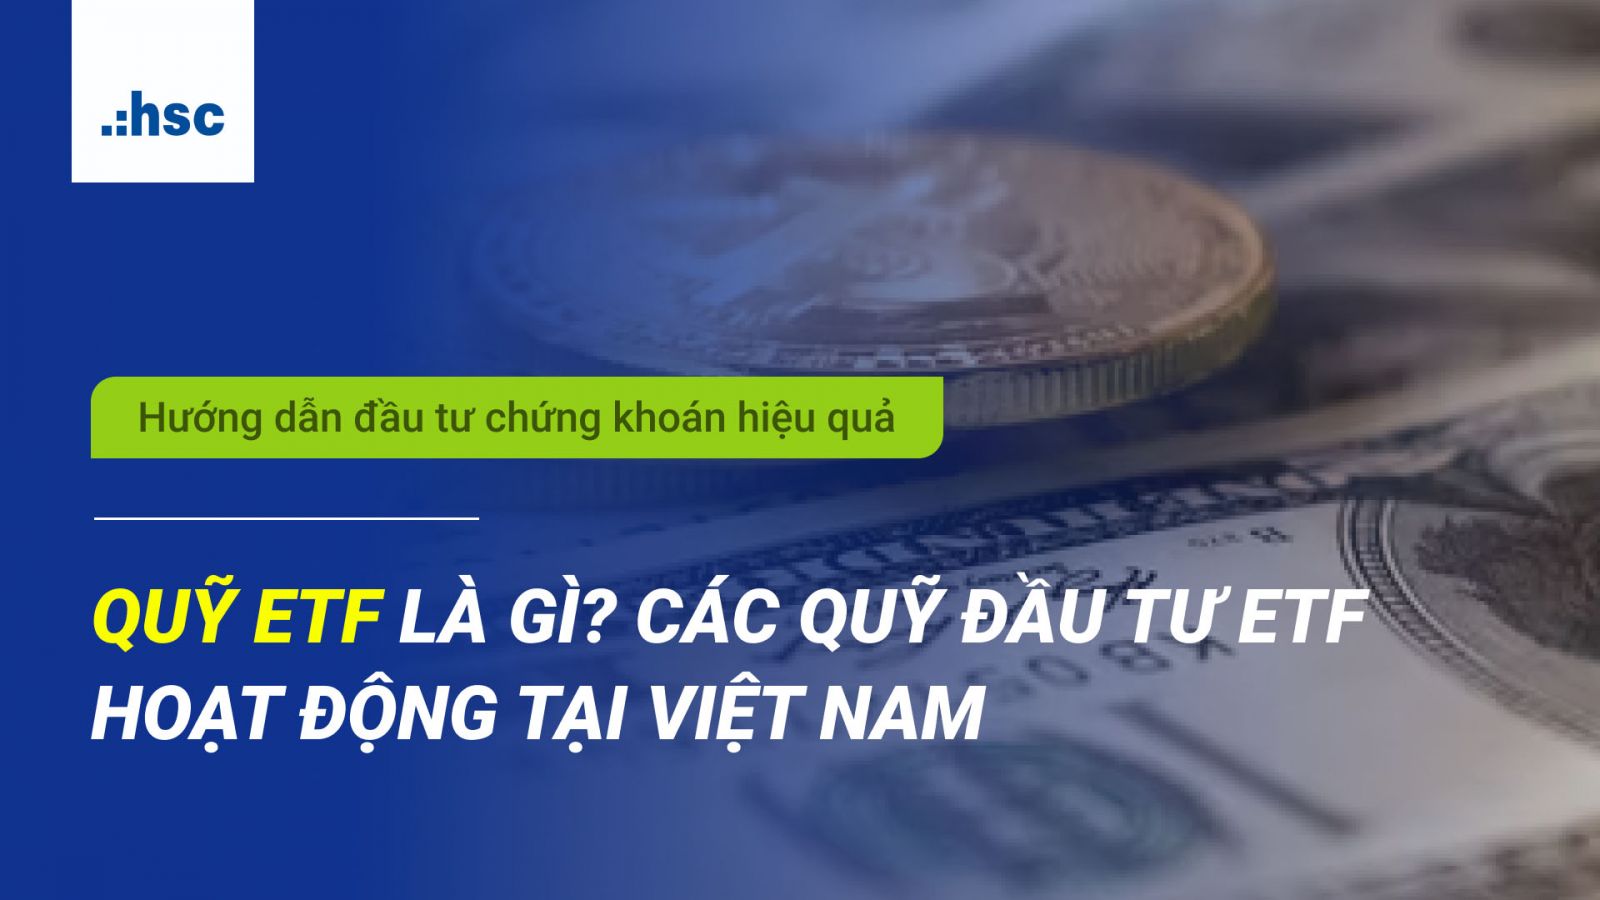 Quỹ ETF là gì? Các quỹ đầu tư ETF hoạt động tại Việt Nam